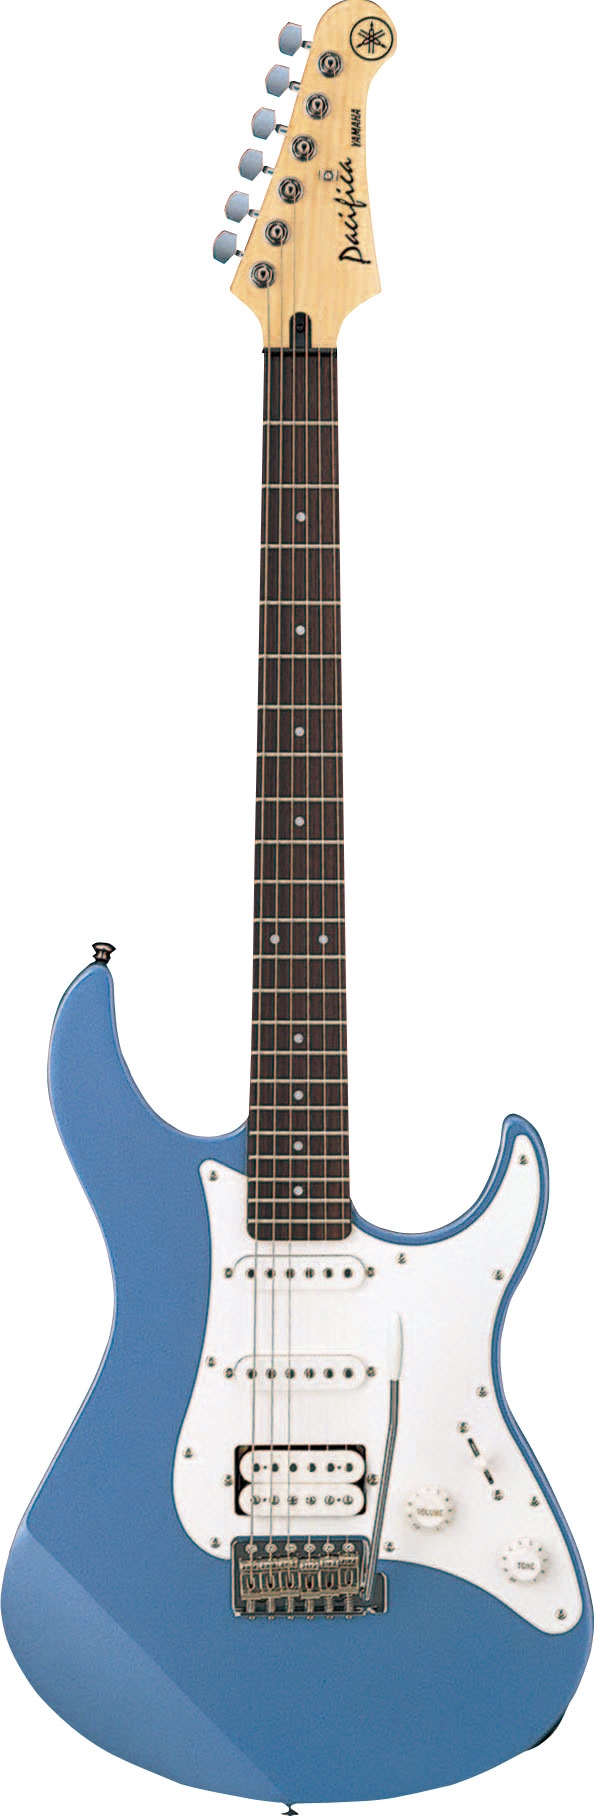 Đàn Electric guitar PACIFICA112J màu xanh